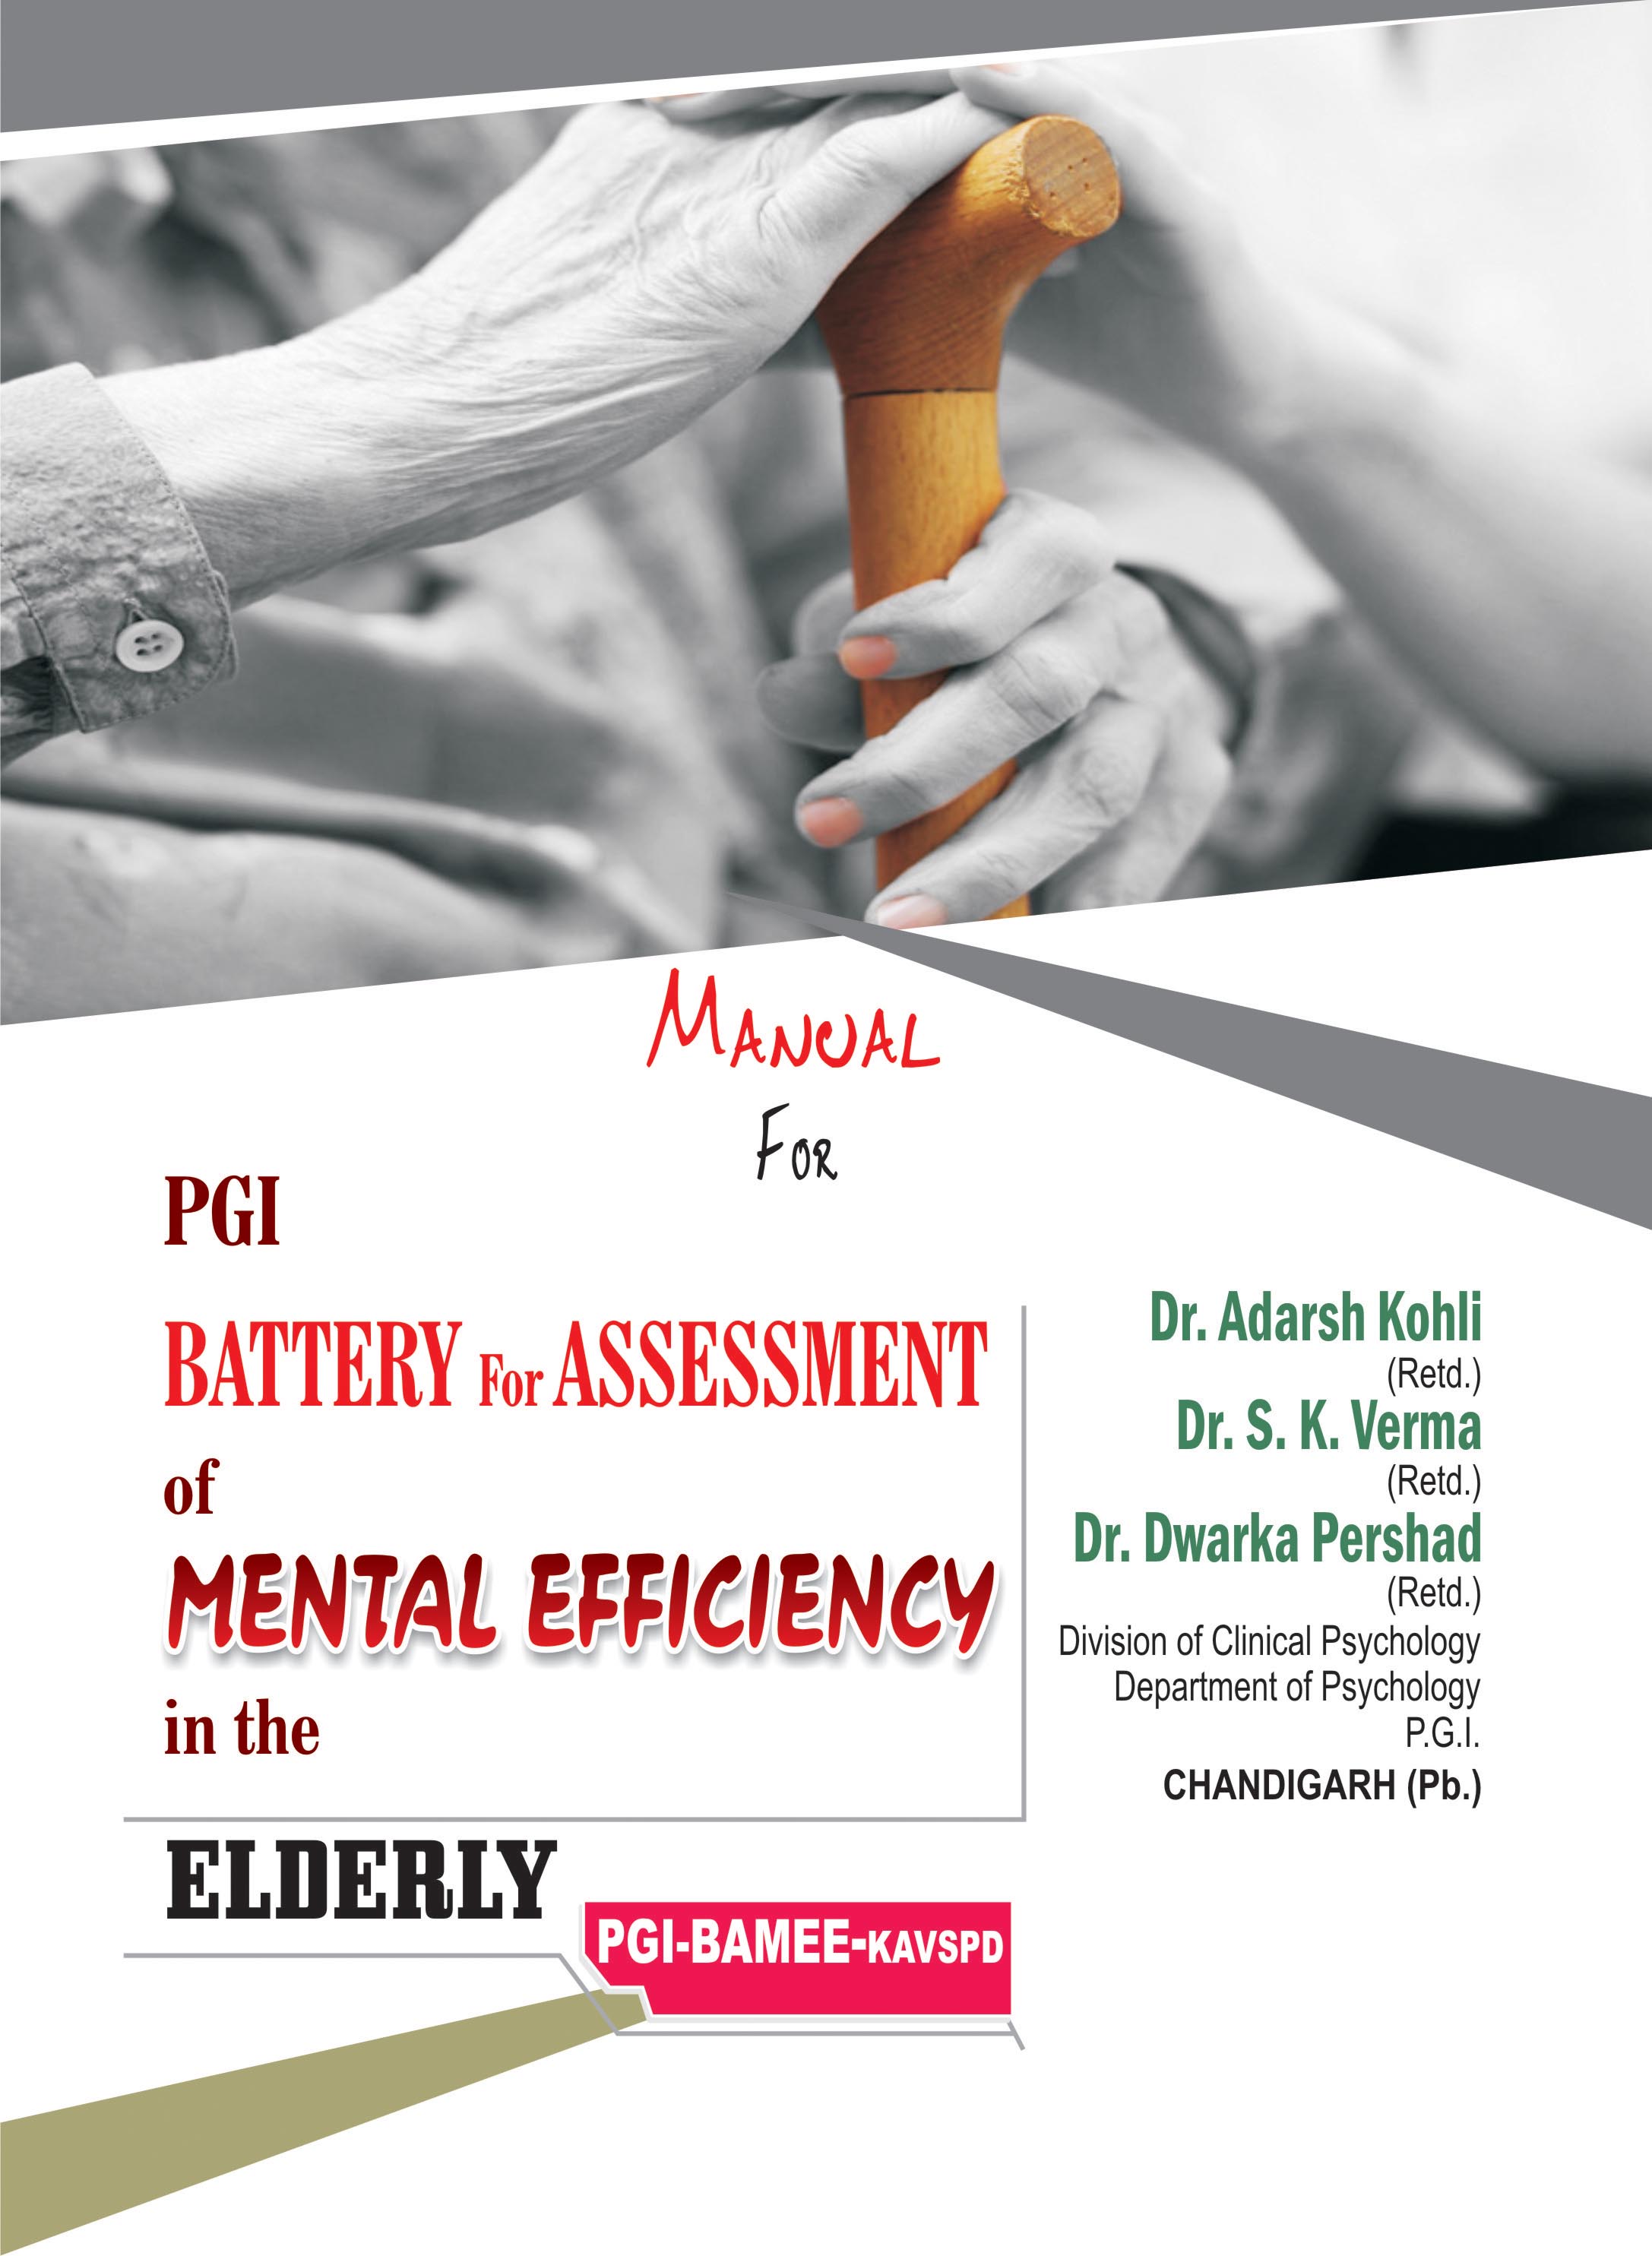 PGI-BATTERY-FOR-ASSESSMENT-OF-MENTAL-EFFICIENCY-IN-THE-ELDERLY